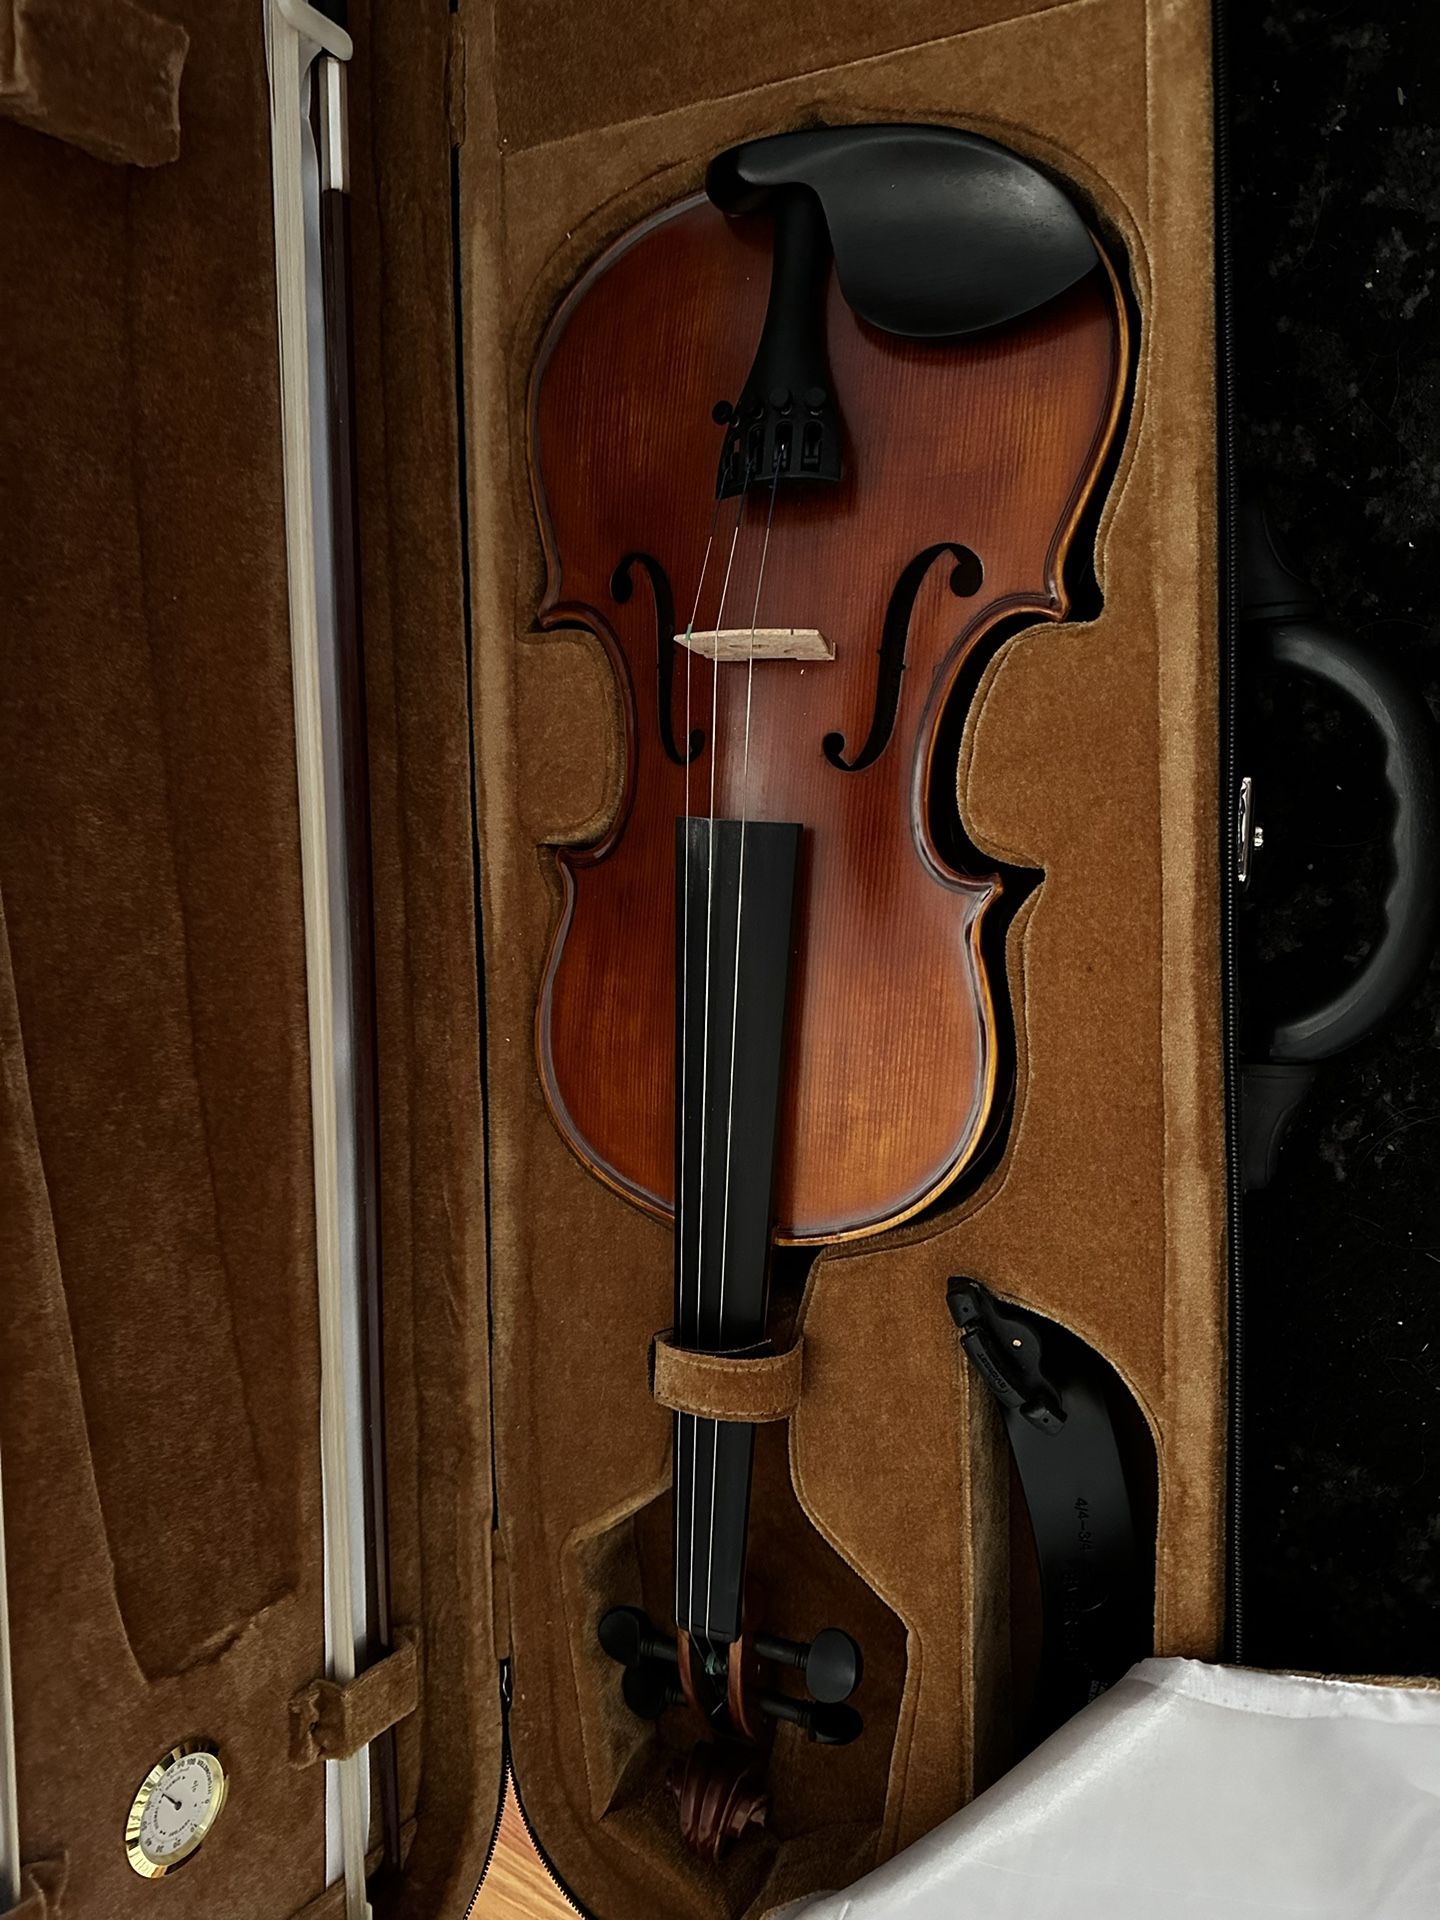 Kennedy Violin